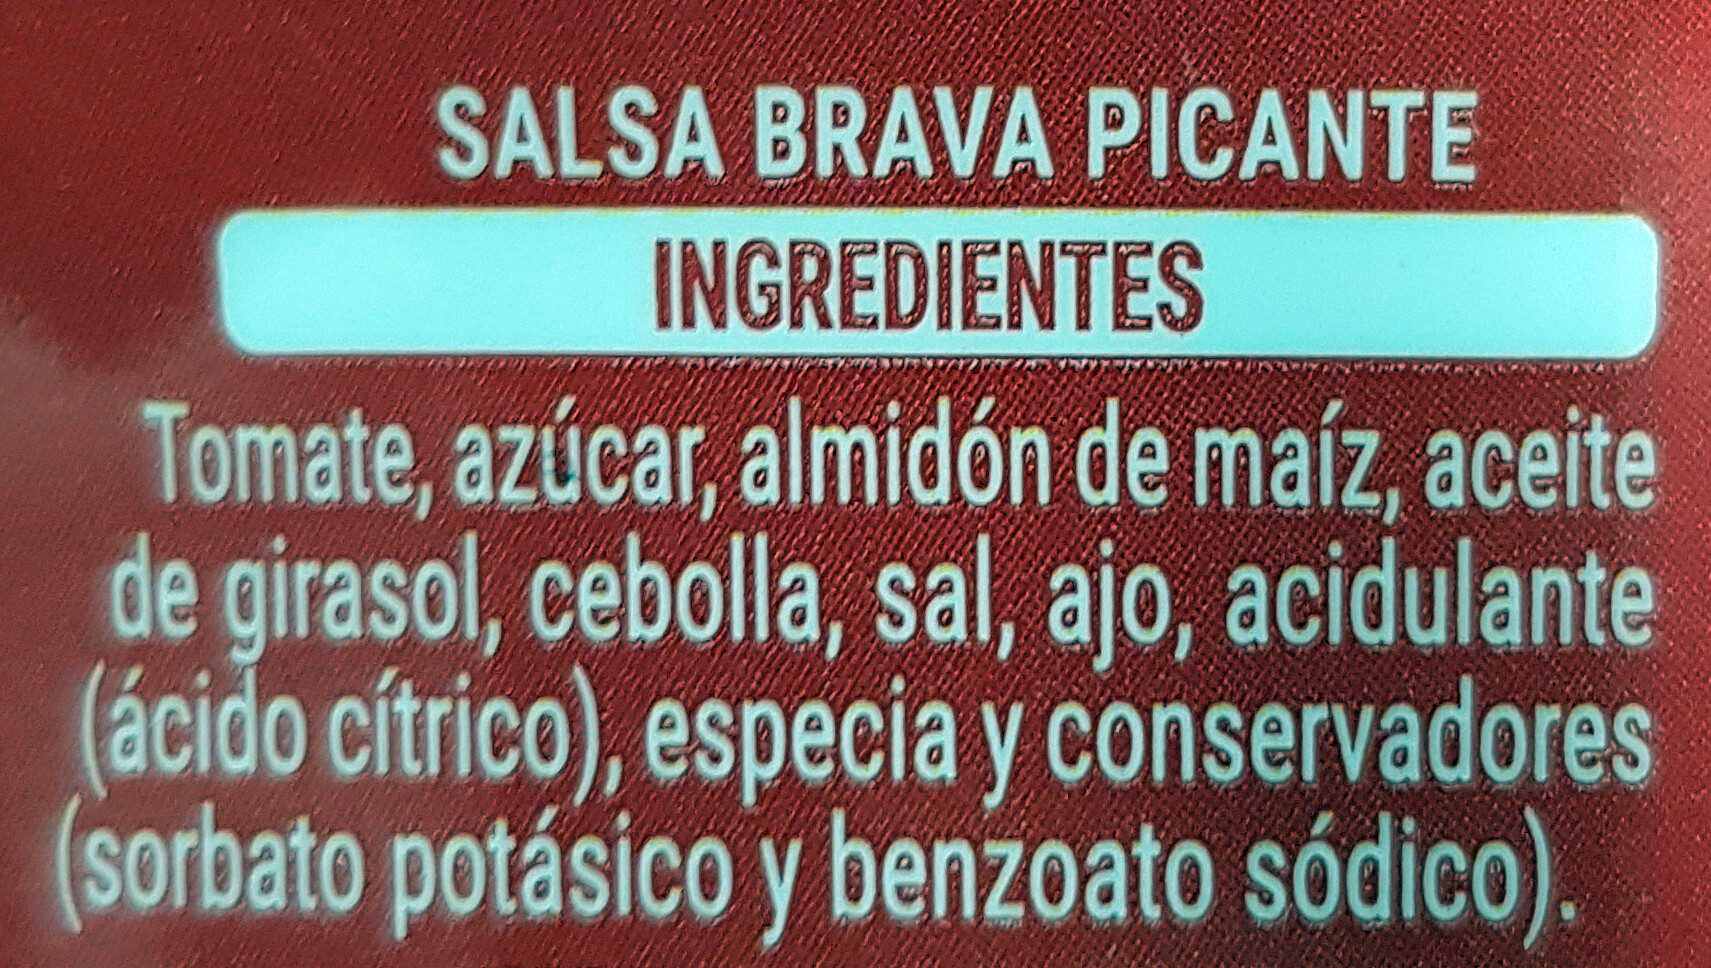 Salsa brava picante - Ingredients - es